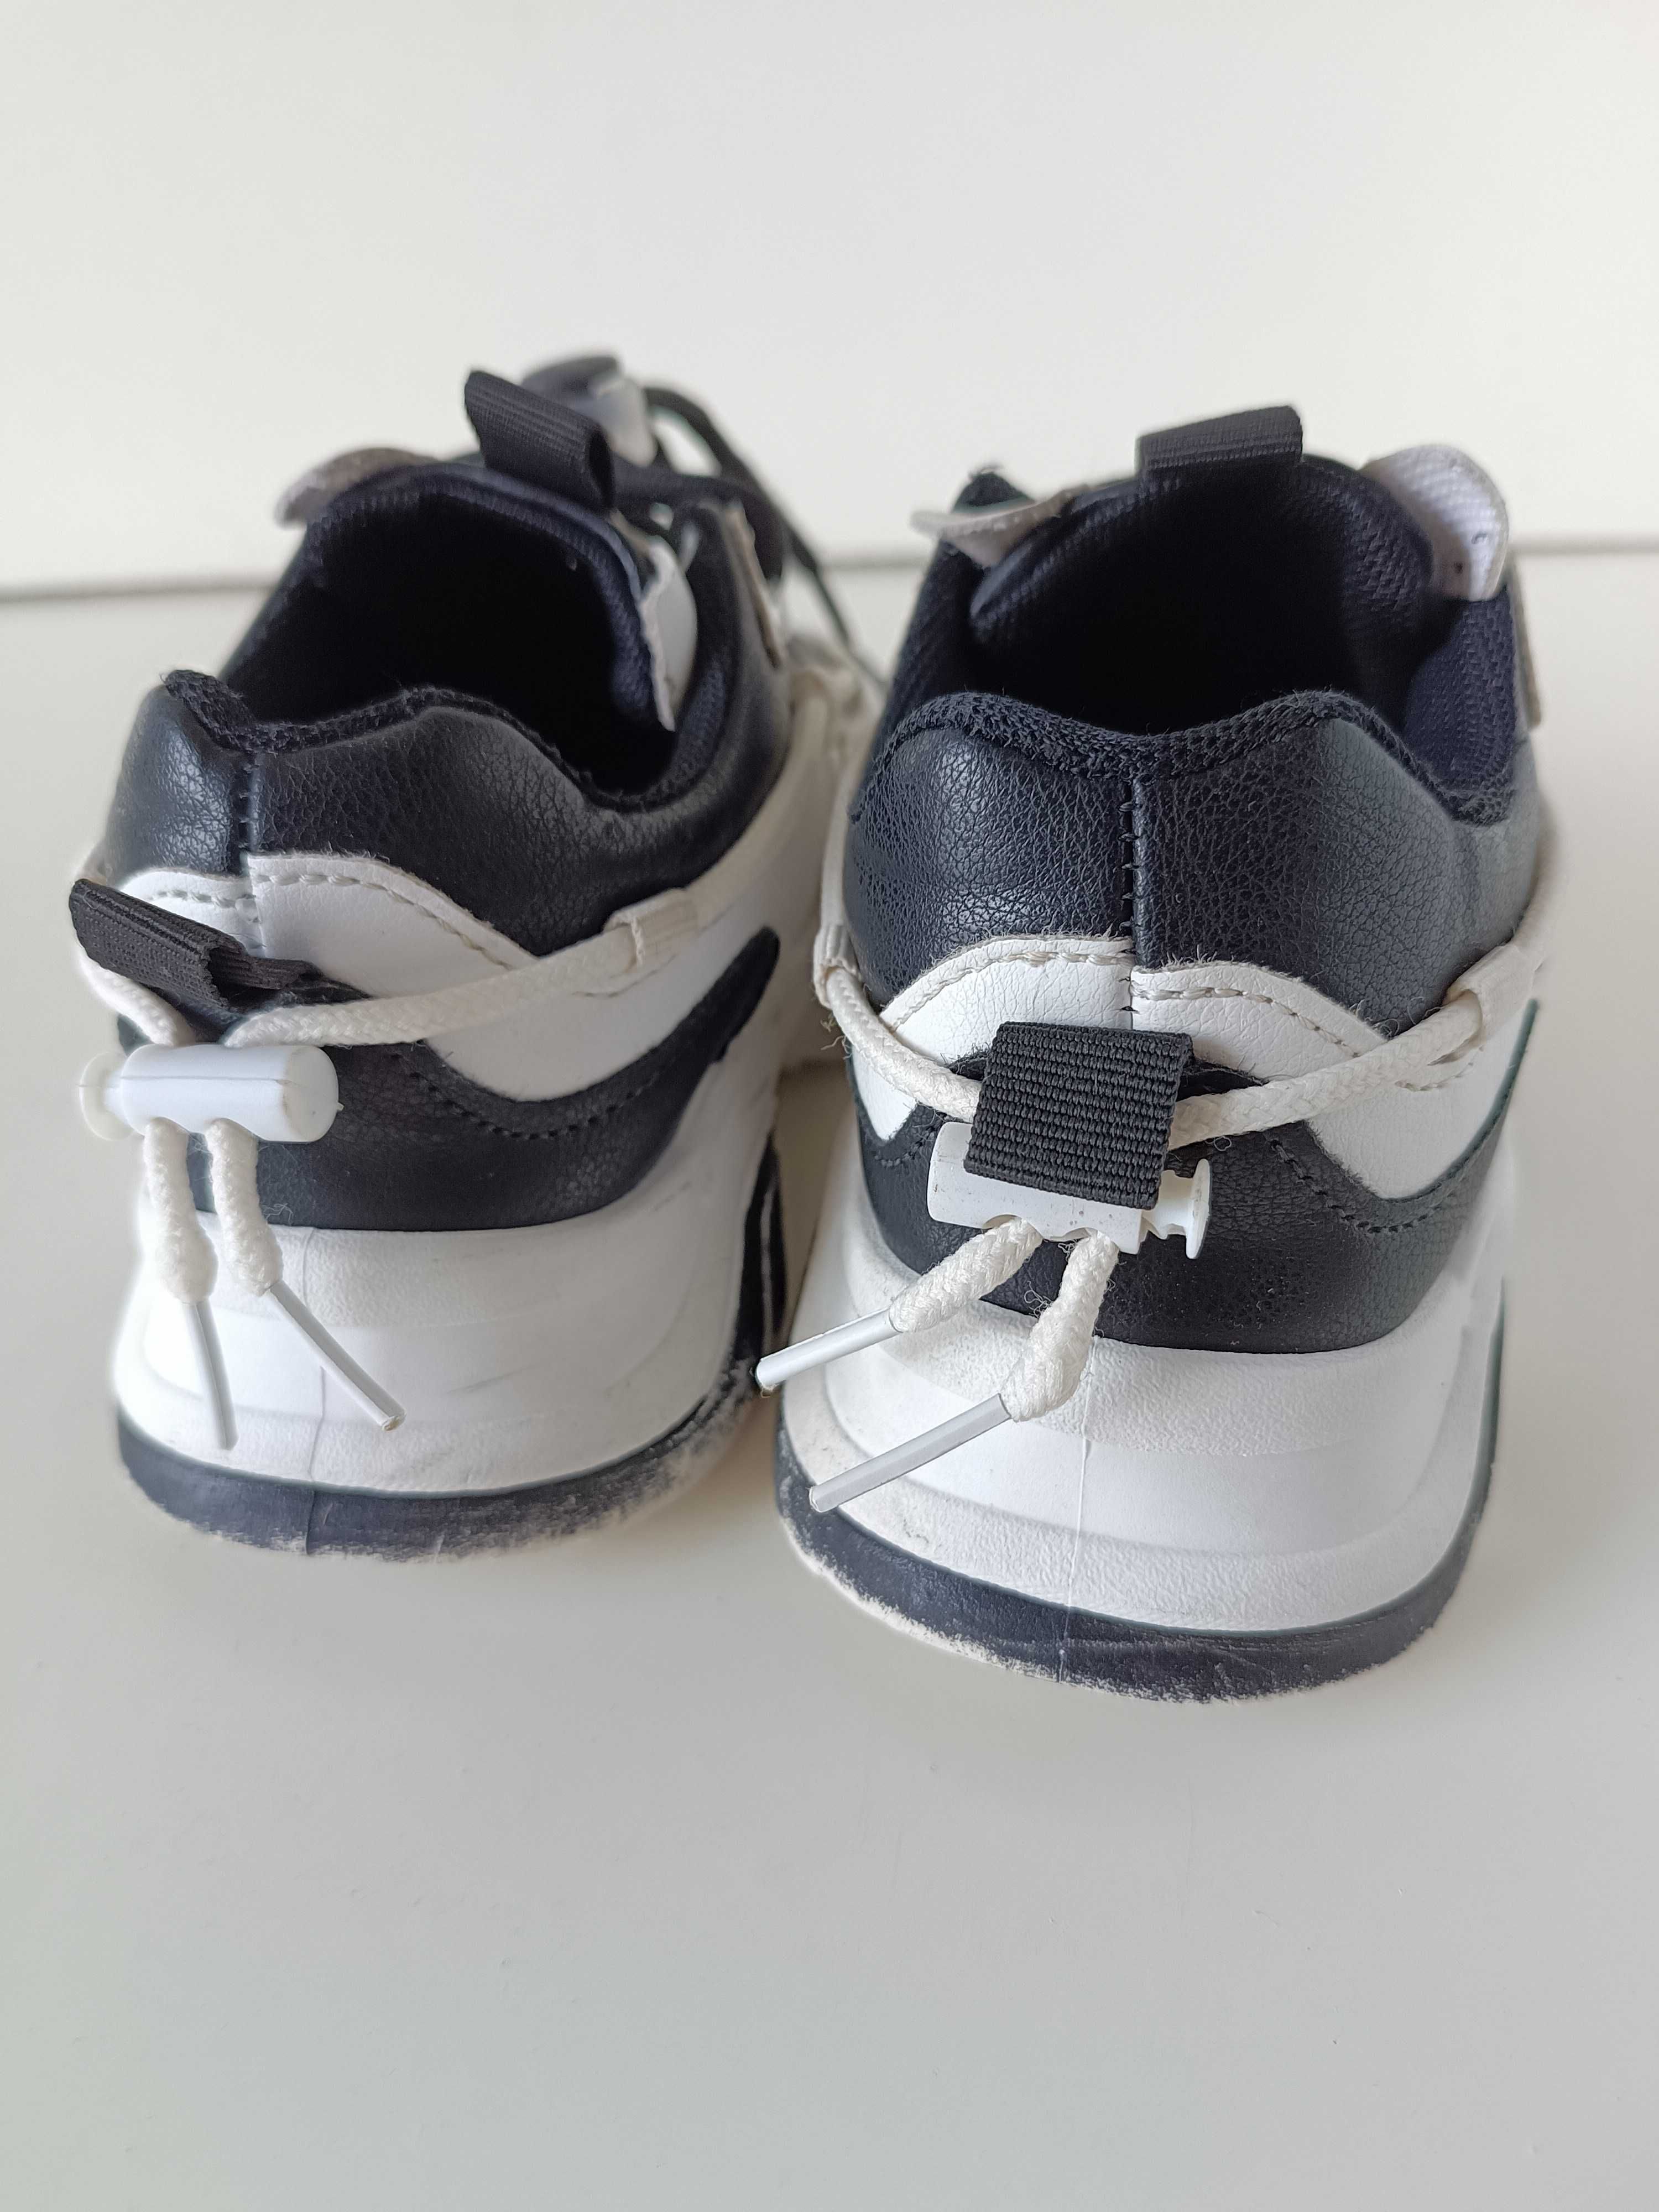 р 27 17 см детские черно-белые кроссовки на мальчика или девочку